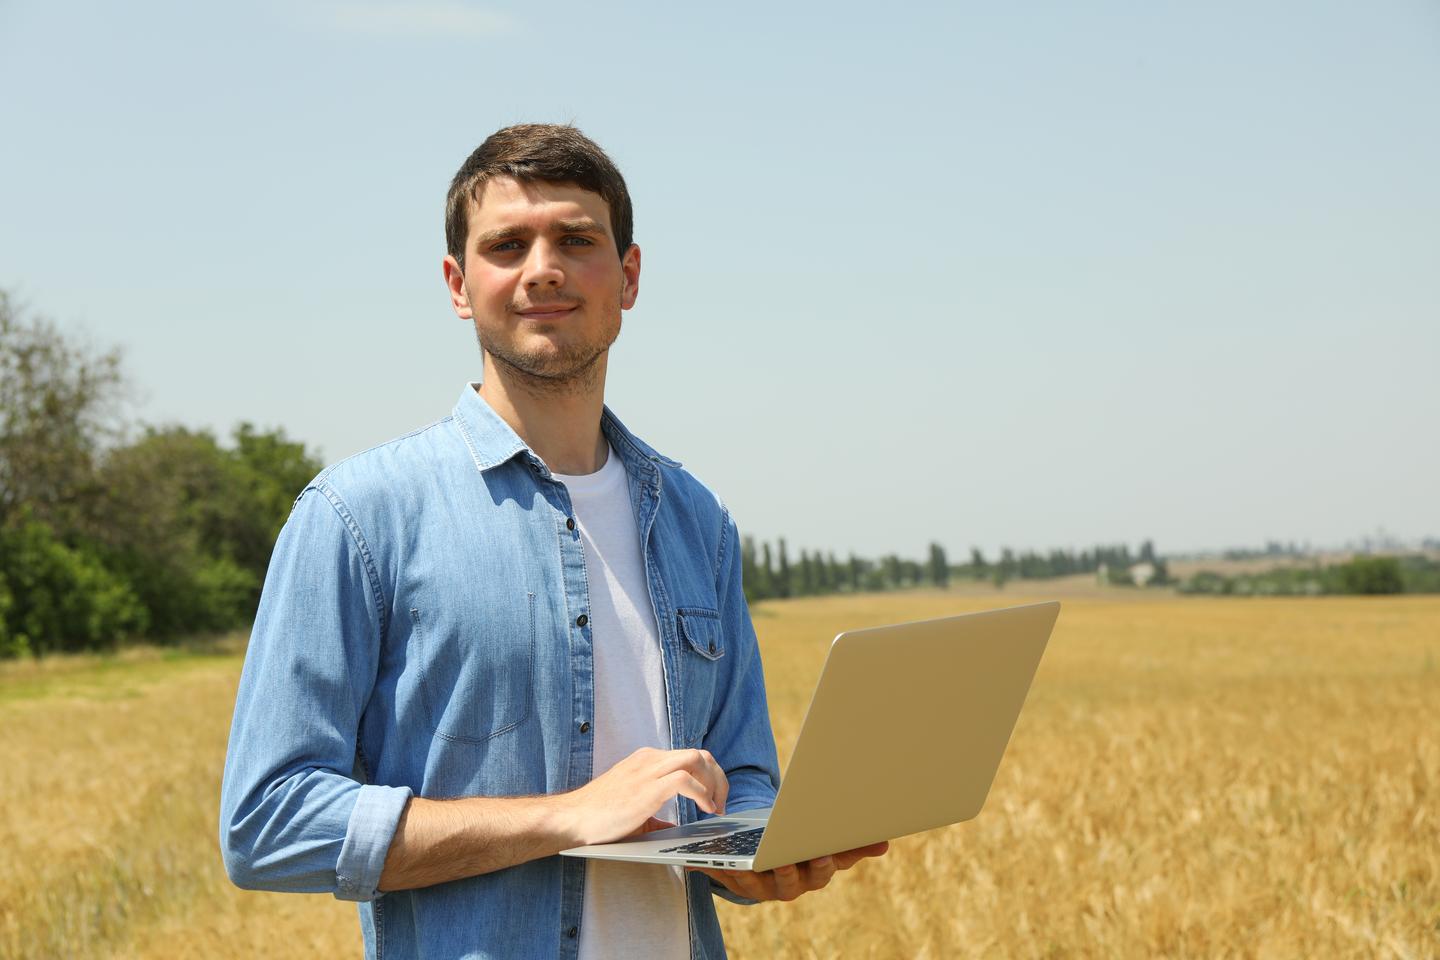 Mann mit Laptop vor Getreidefeld